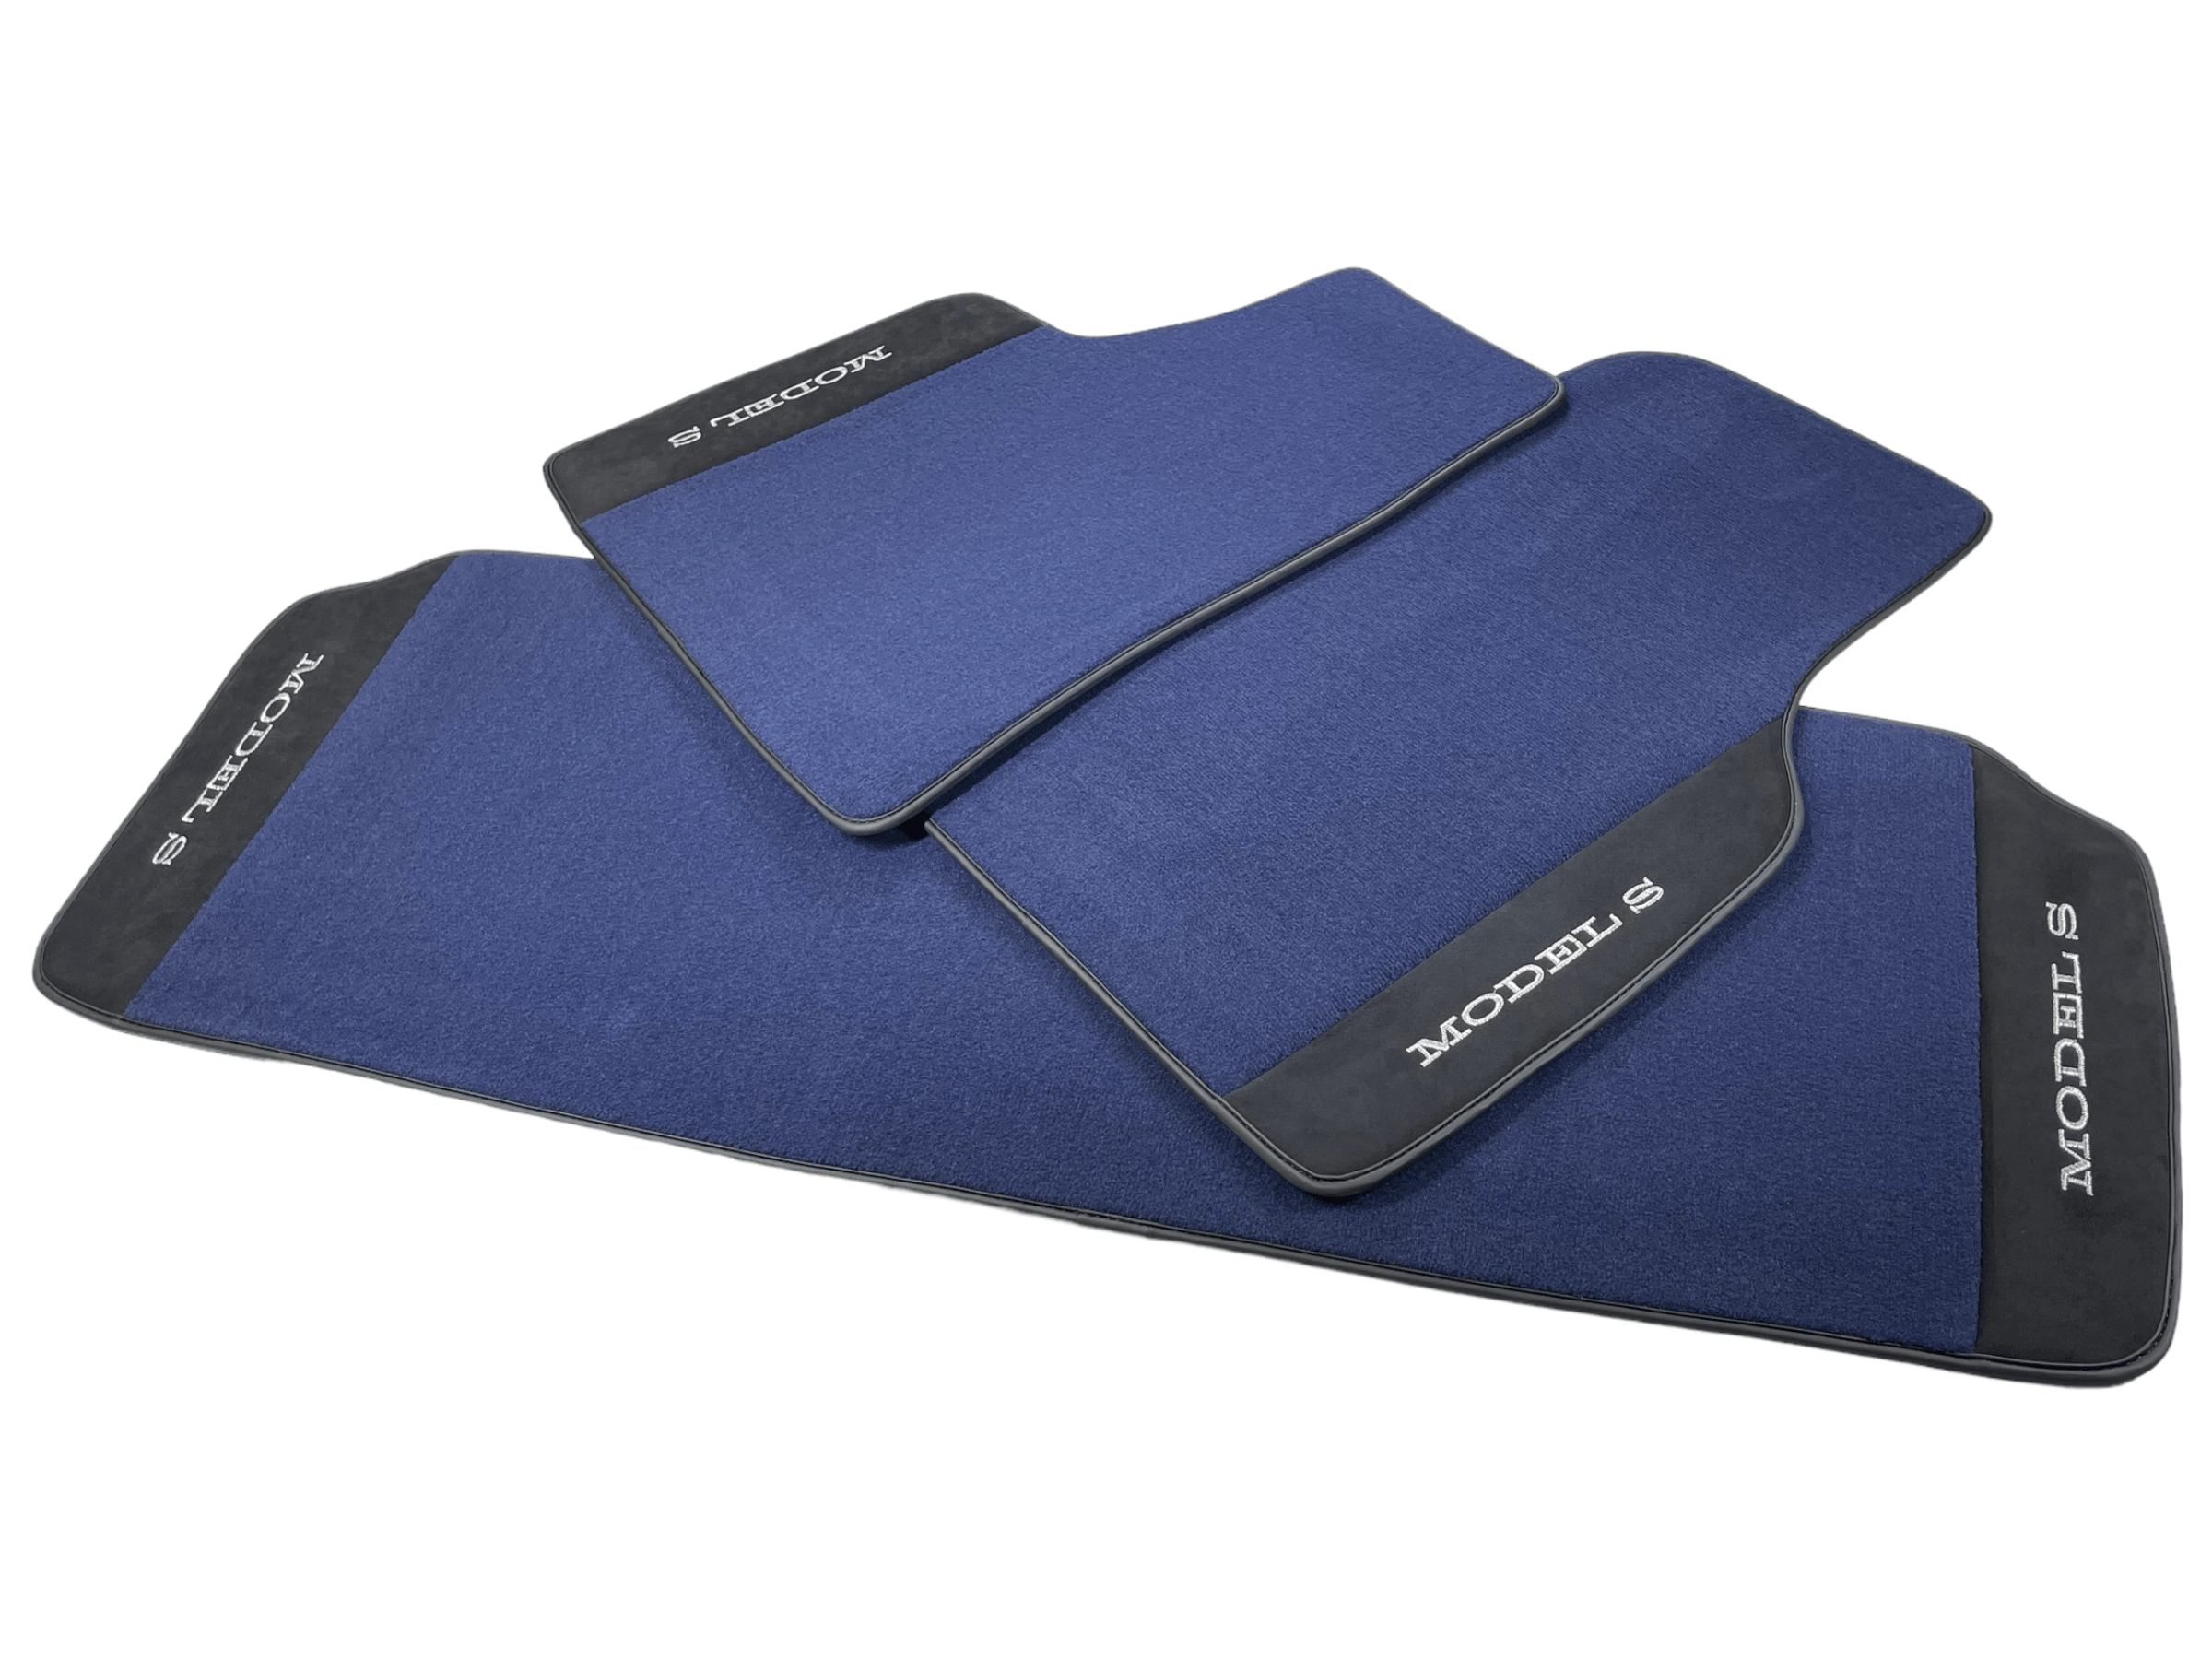 Dark Blue Floor Mats For Tesla Model S With Alcantara Leather - AutoWin